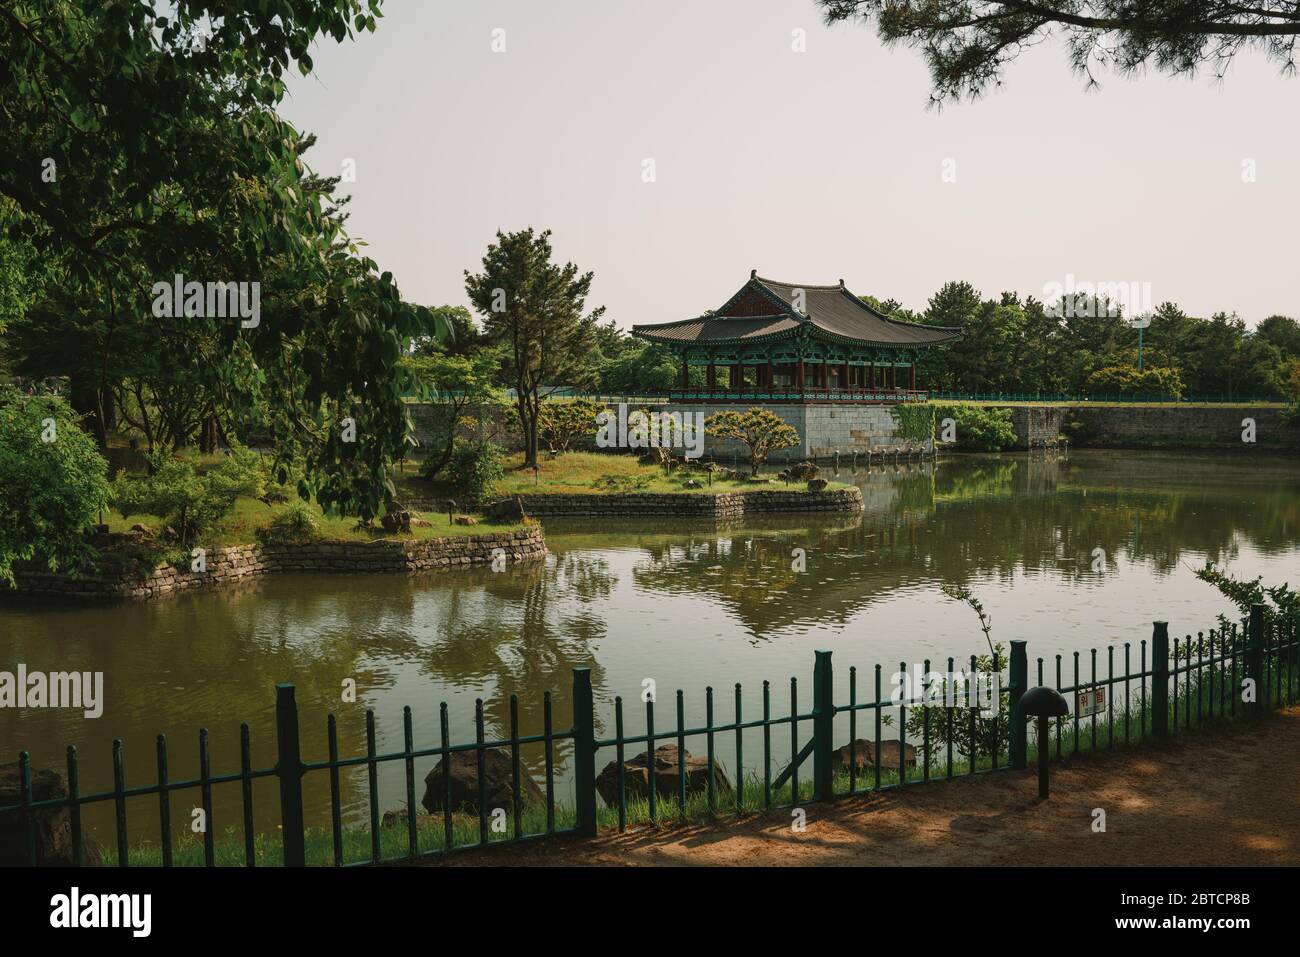 Gyeongju, Corea del Sur - 22 de mayo de 2020: El Palacio de Donggung y el estanque Wolji, antes conocido como Anapji es otro destino popular en Gyeongju. Foto de stock